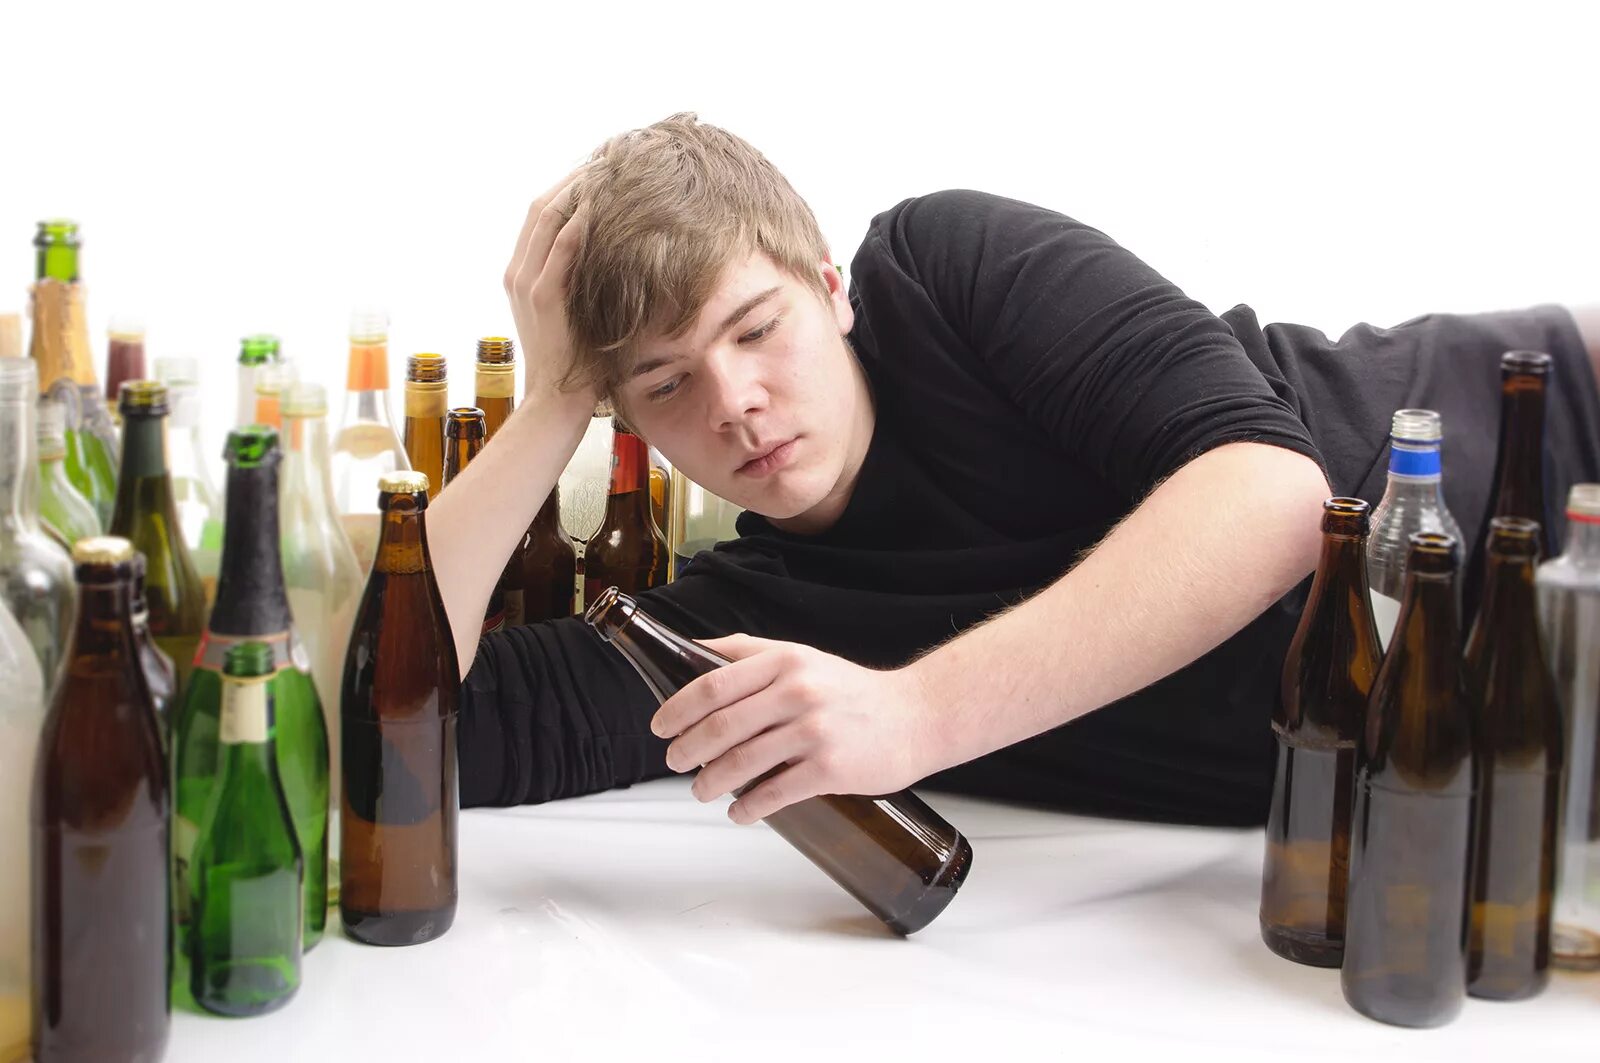 Картинка пьющий человек. Молодежь с пивом. Алкоголизм молодежи.